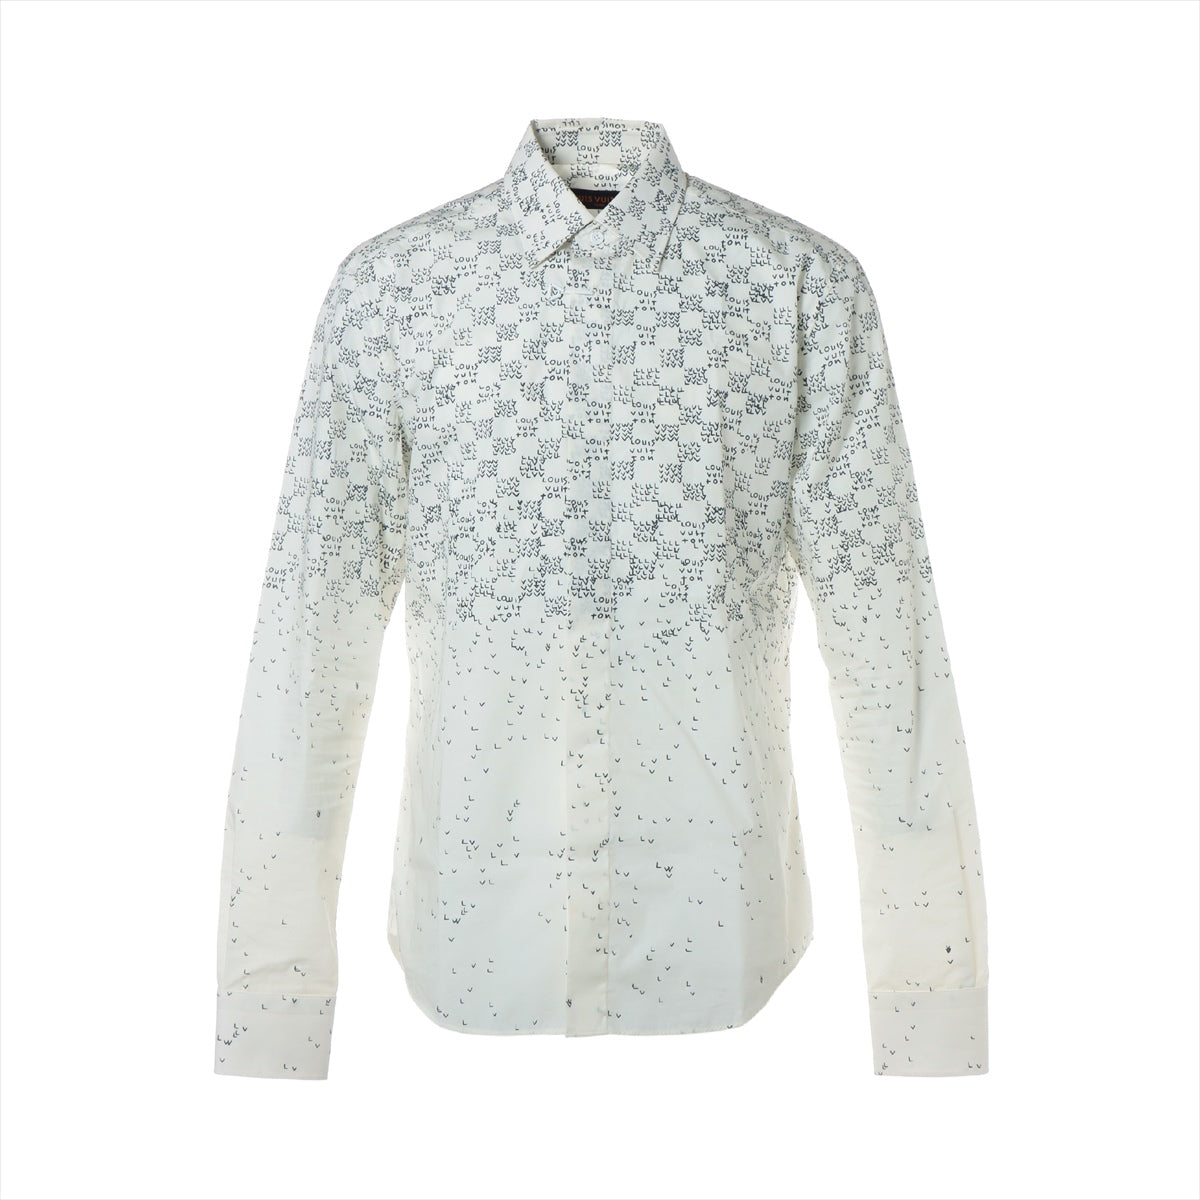 Louis Vuitton 22AW Cotton & nylon Shirt S Men's White  RM222M Damier spread